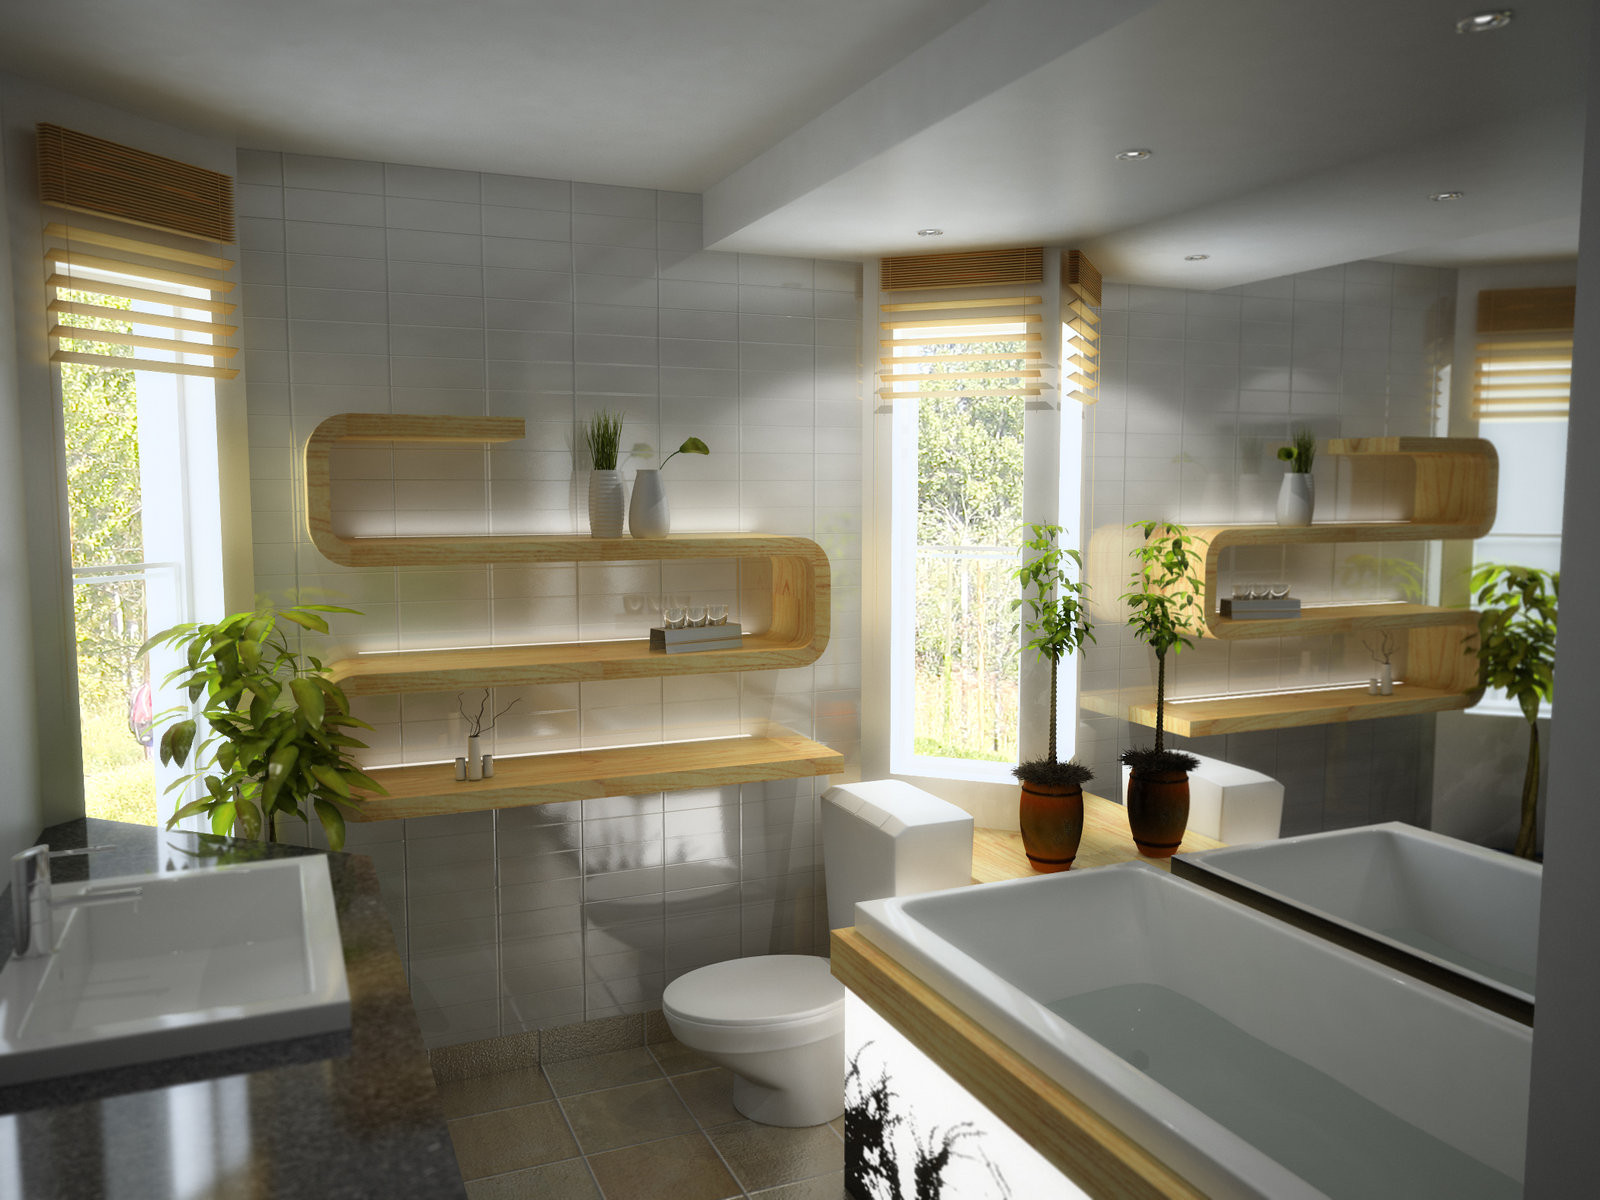 Modern Bathroom Decor Ideas
 Unique & Modern Bathroom Decorating Ideas & Designs